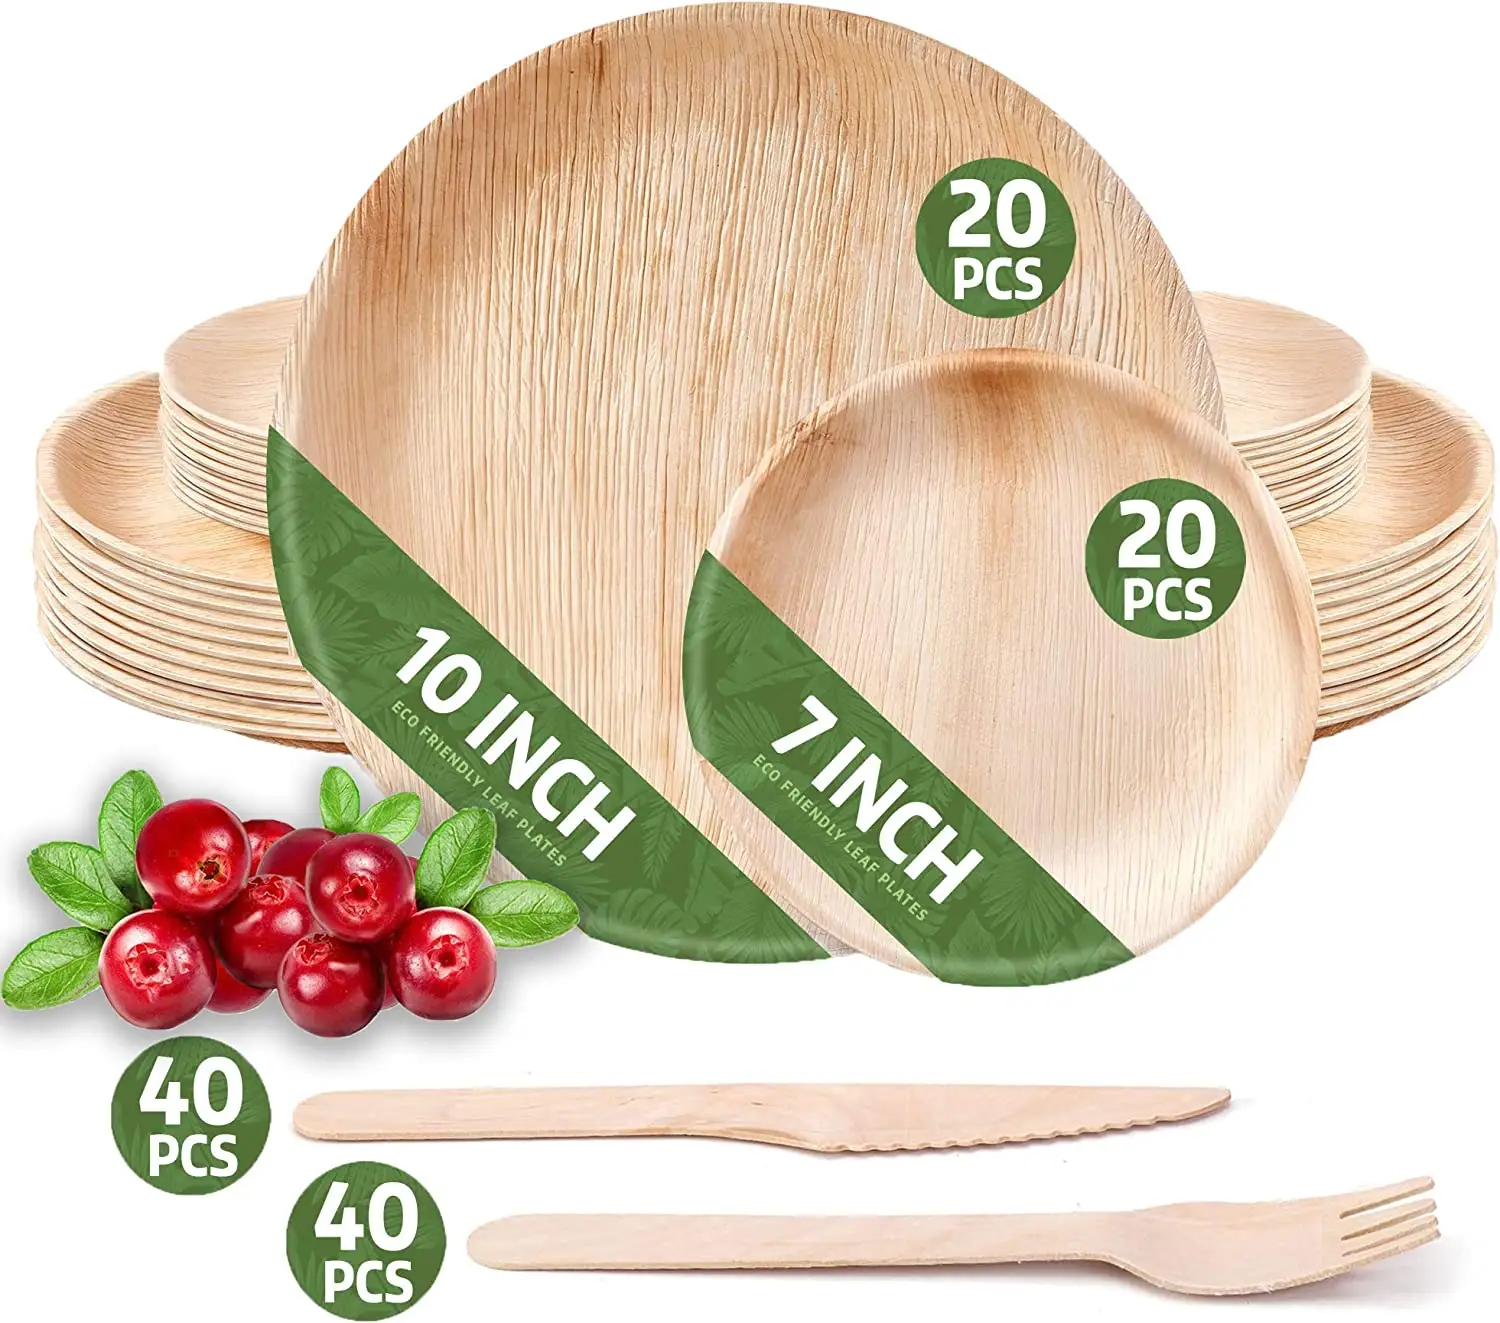 Platos de bambú biodegradables y desechables de alta calidad, platos redondos de hoja de palma Areca de 10 pulgadas para Catering, eventos y restaurantes